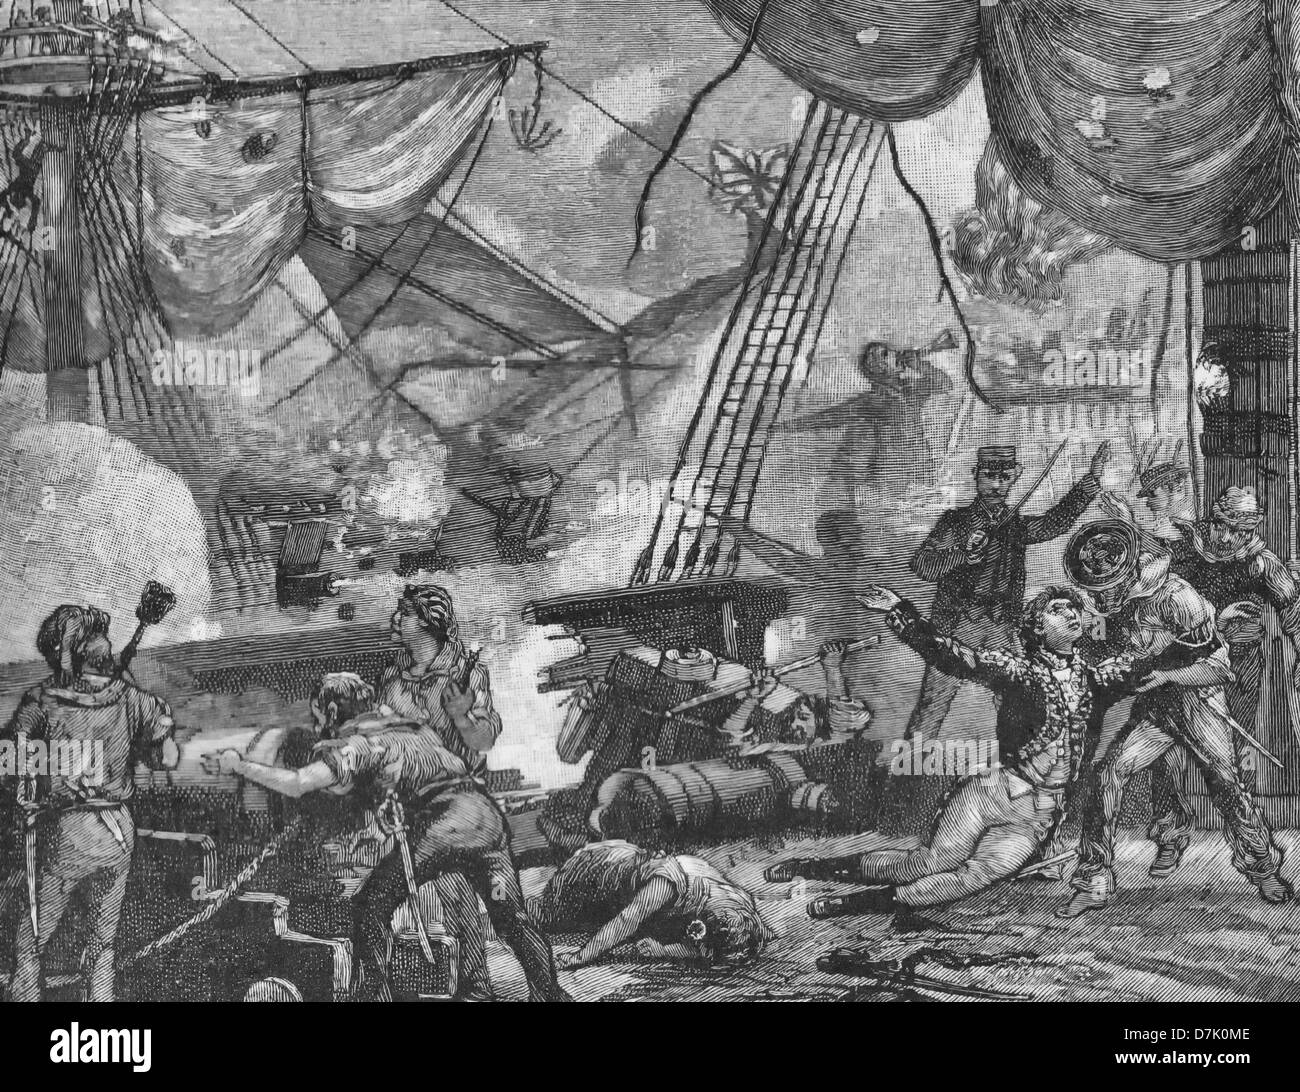 'Don't give up the ship', la commande de mourir de James Lawrence en 1813 à bord du USS Chesapeake durant la guerre de 1812 Banque D'Images